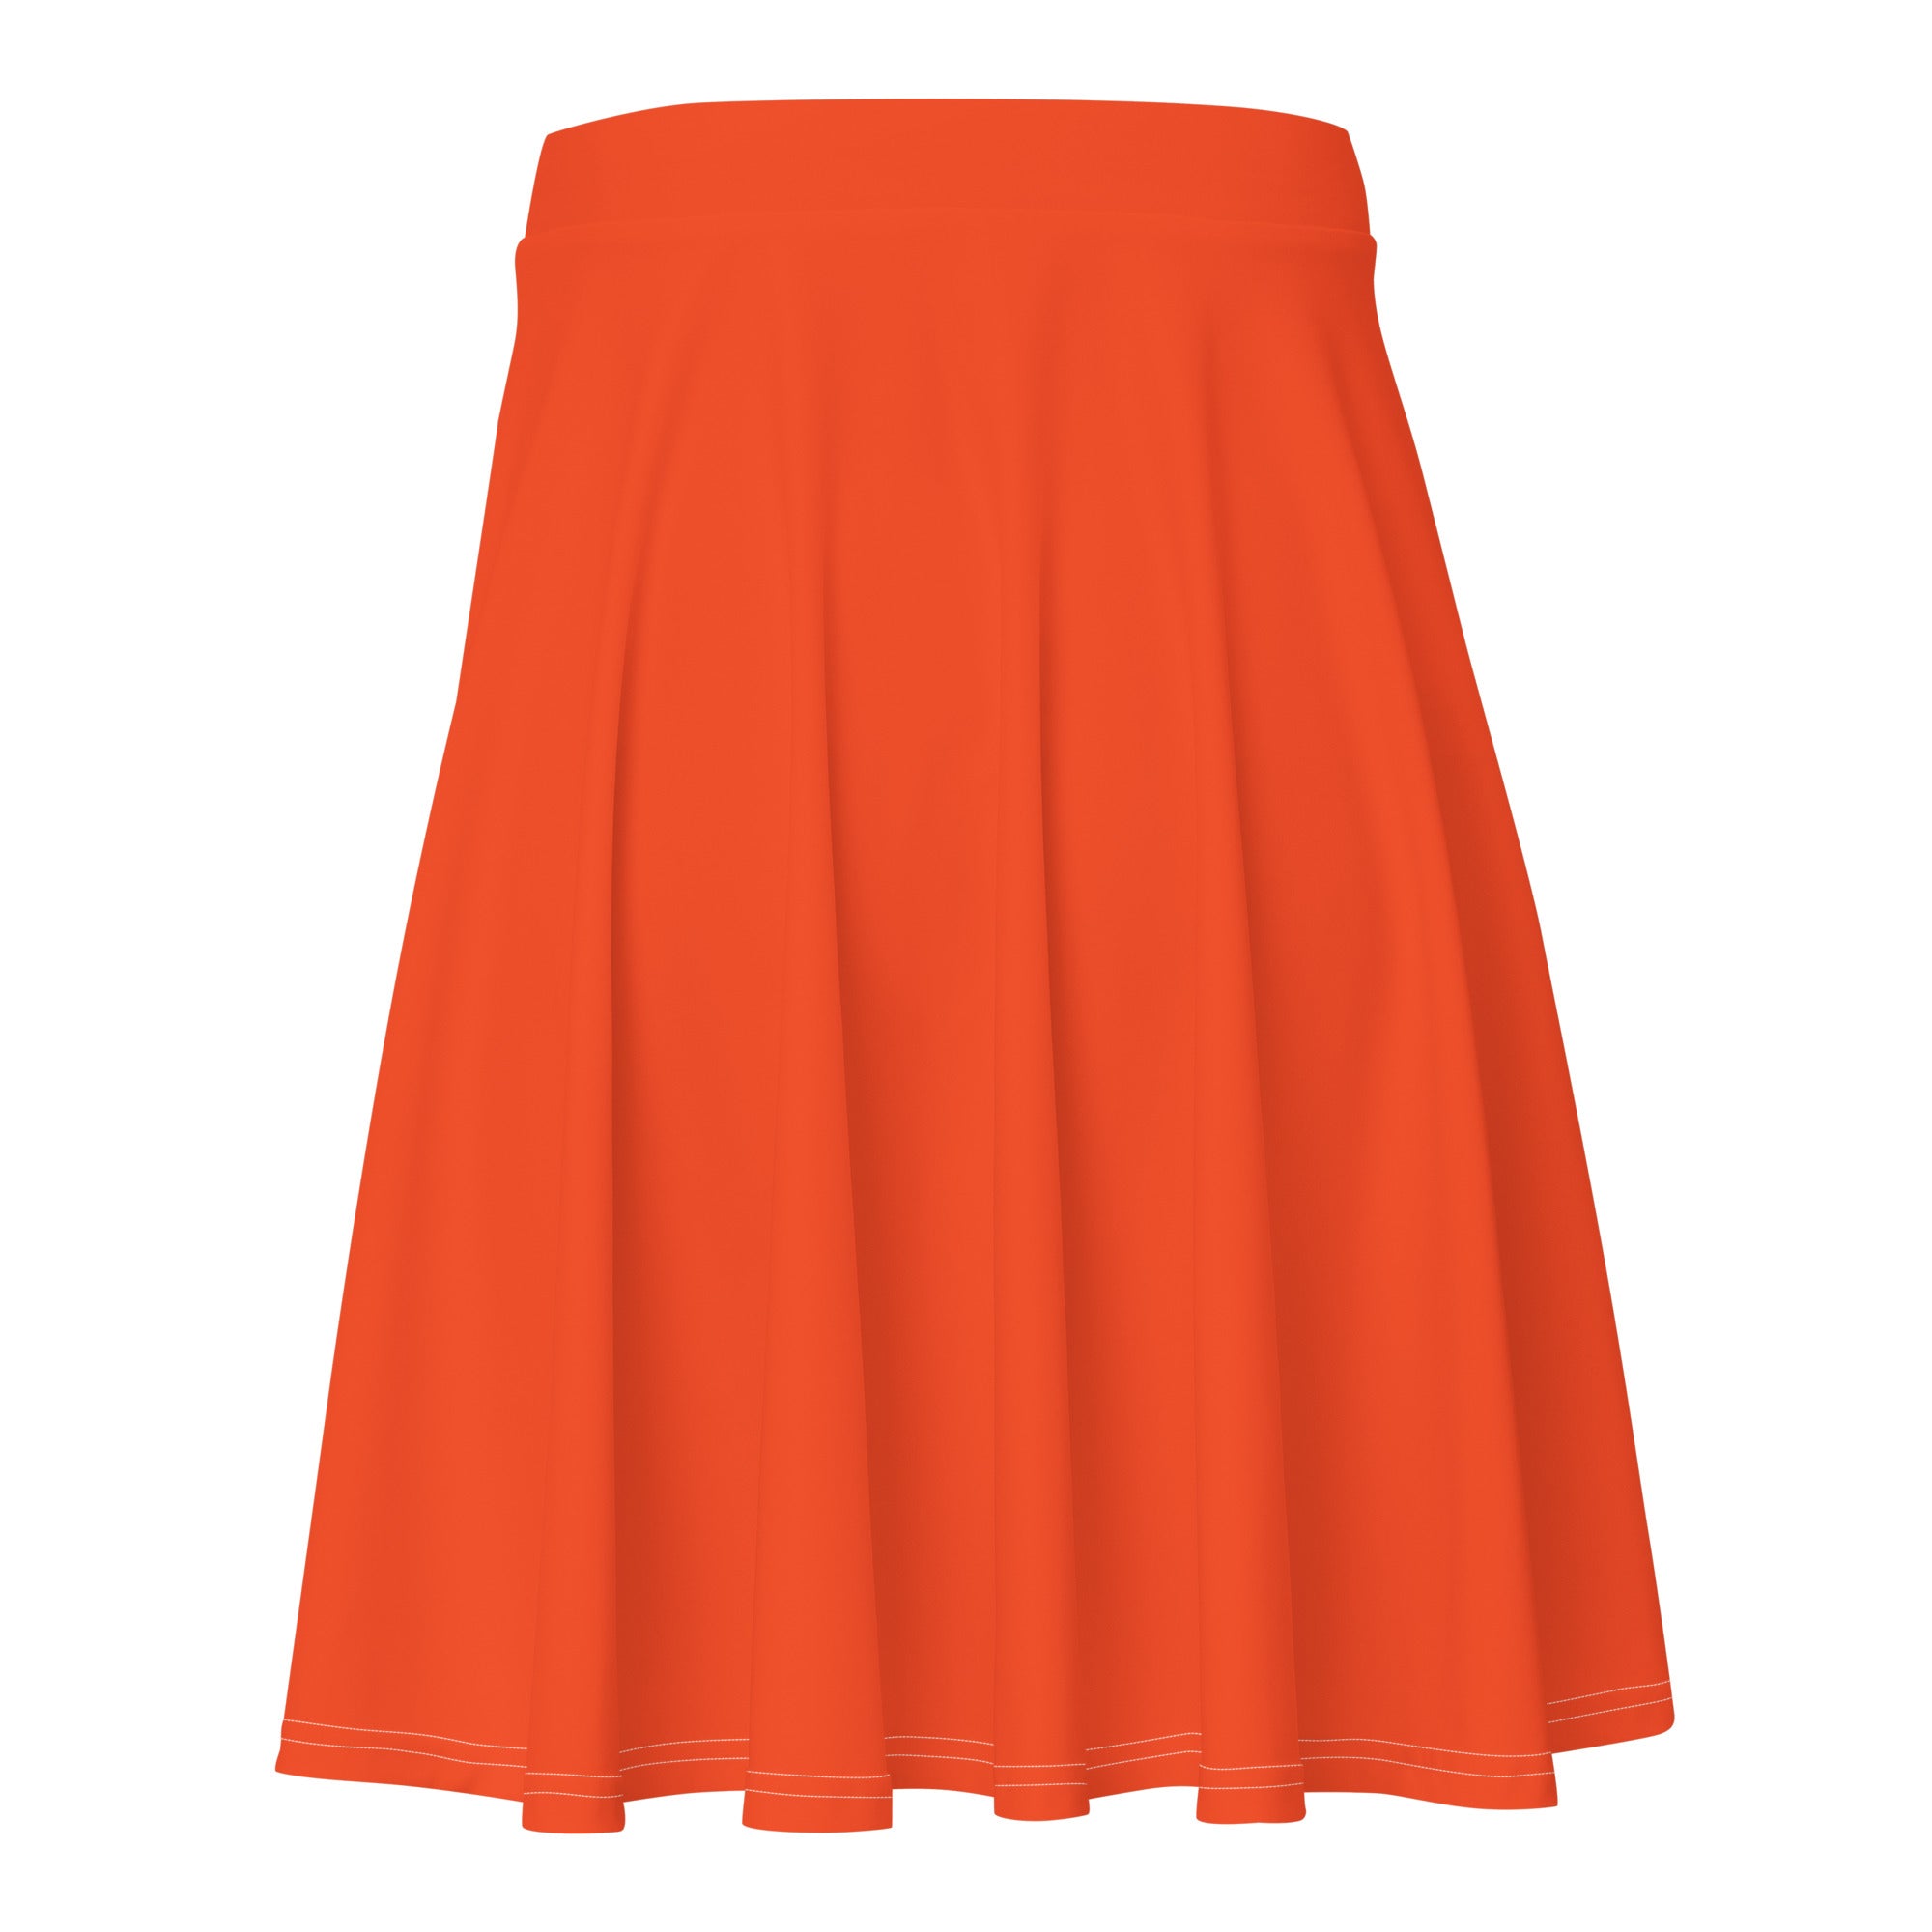 Outrageous Orange Skater Skirt - Skater Skirt - DRAGON FOXX™ - Outrageous Orange Skater Skirt - 6370605_9606 - XS - Outrageous Orange - Skater Skirt - Dragon Foxx™ - Dragon Foxx™ Outrageous Orange Skater Skirt - Dragon Foxx™ Outrageous Orange Skirt